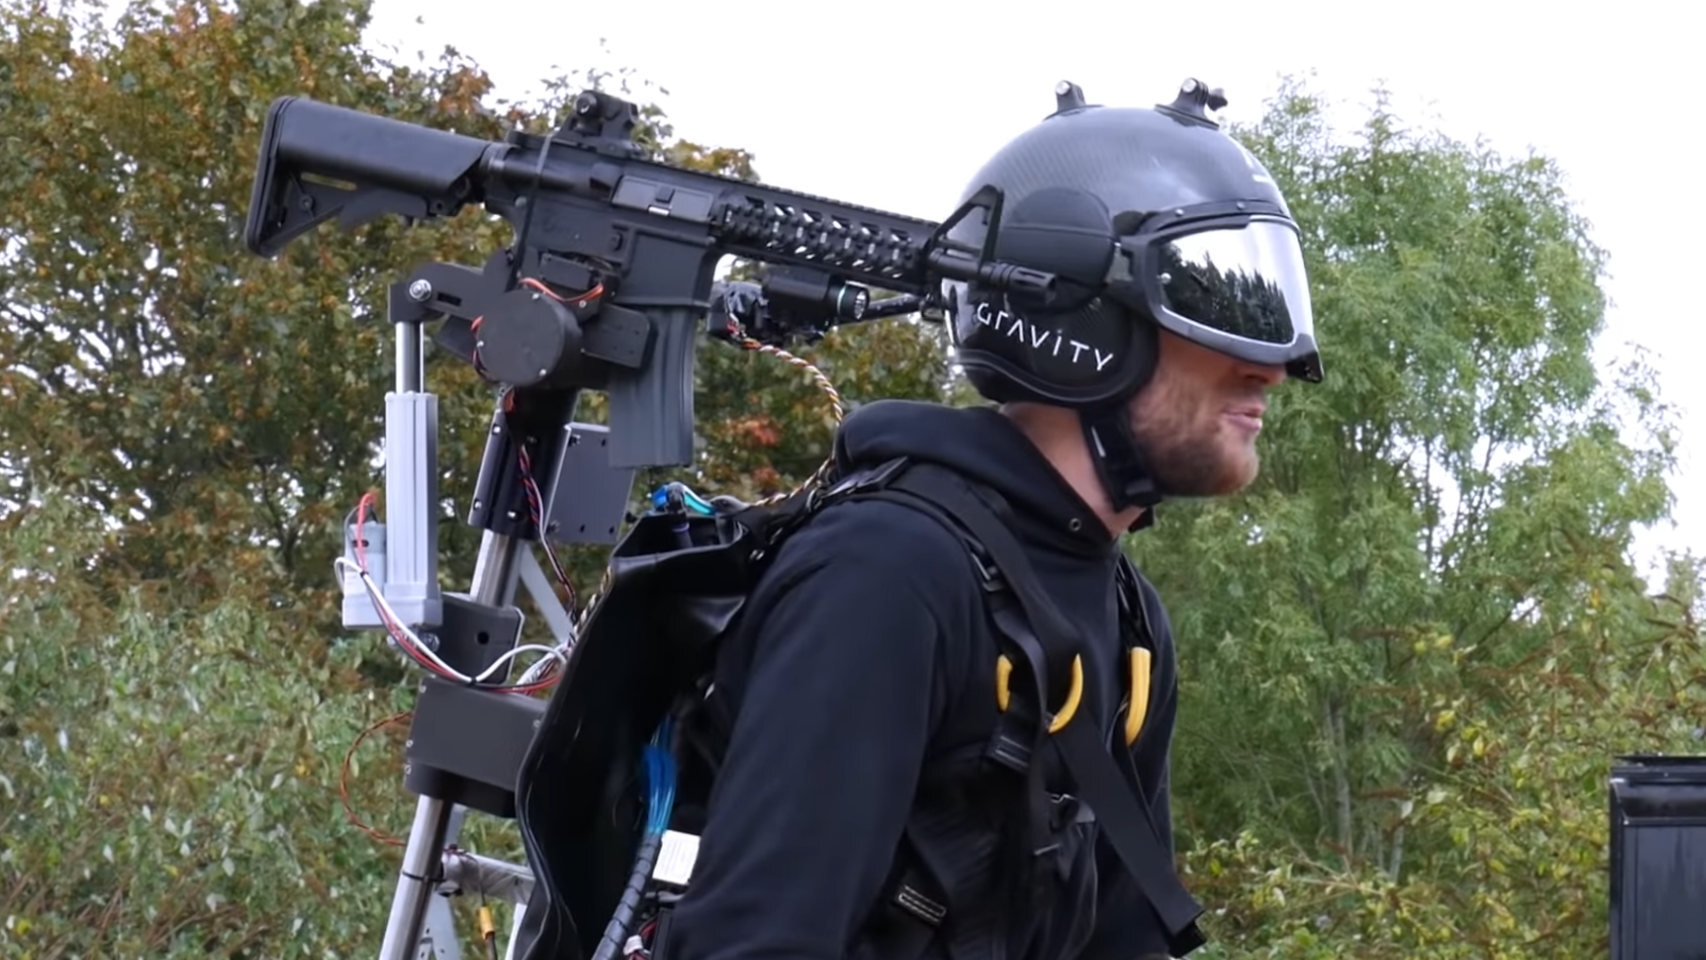 Han creado un traje volador con una ametralladora, qué puede salir mal